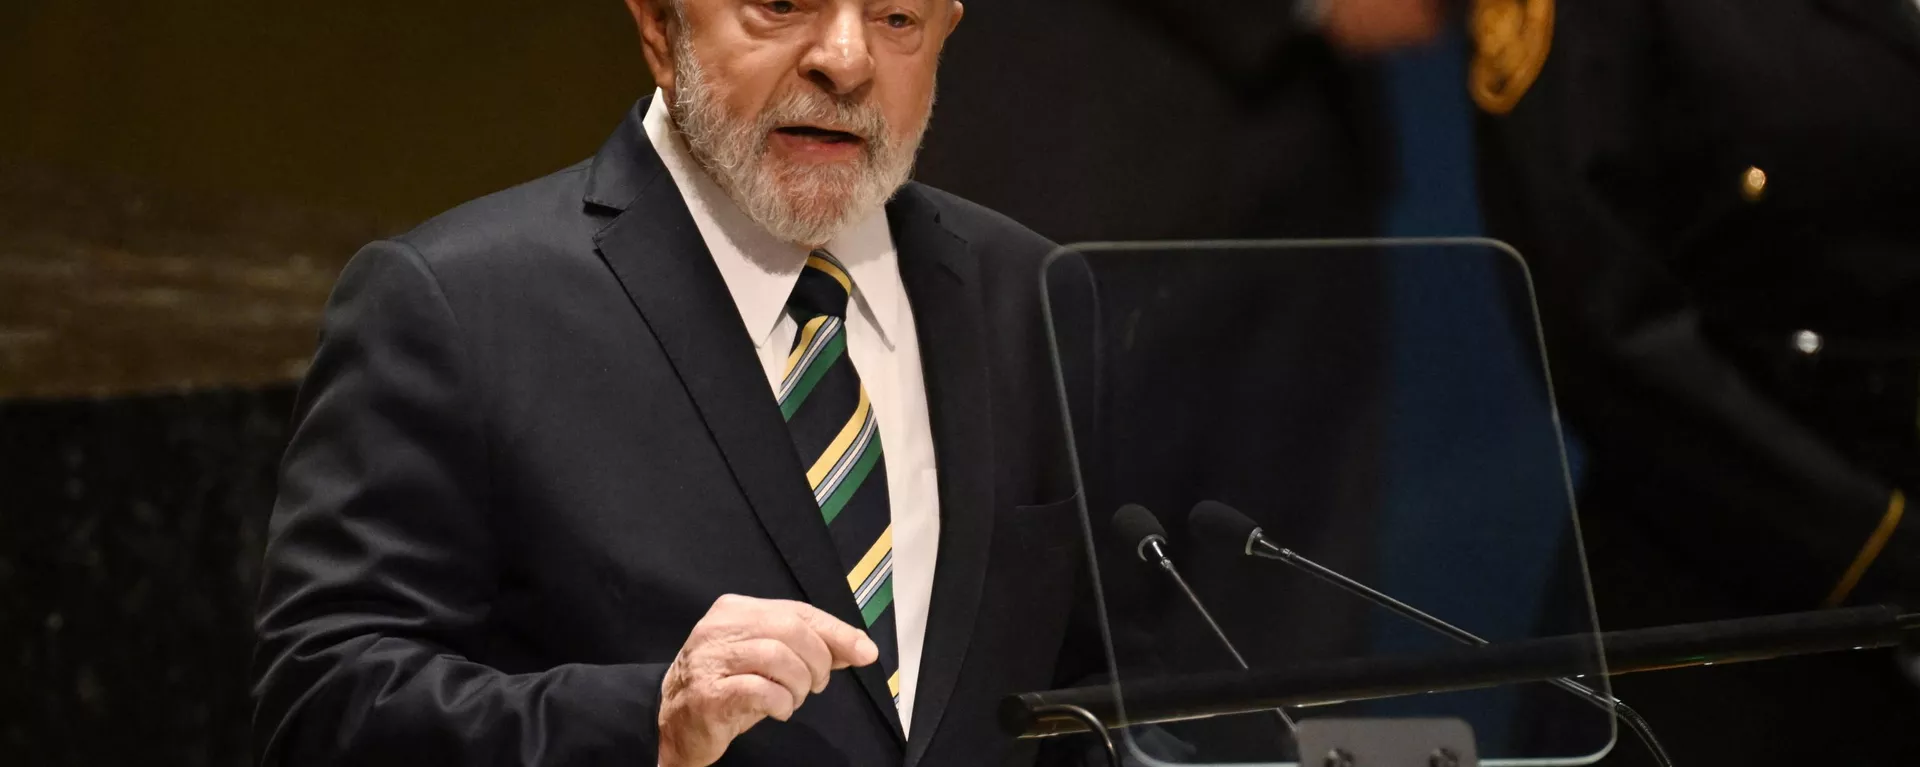 O presidente brasileiro, Luiz Inácio Lula da Silva, discursa na 78ª Assembleia Geral das Nações Unidas na sede da ONU na cidade de Nova York, em 19 de setembro de 2023. - Sputnik Brasil, 1920, 07.10.2023